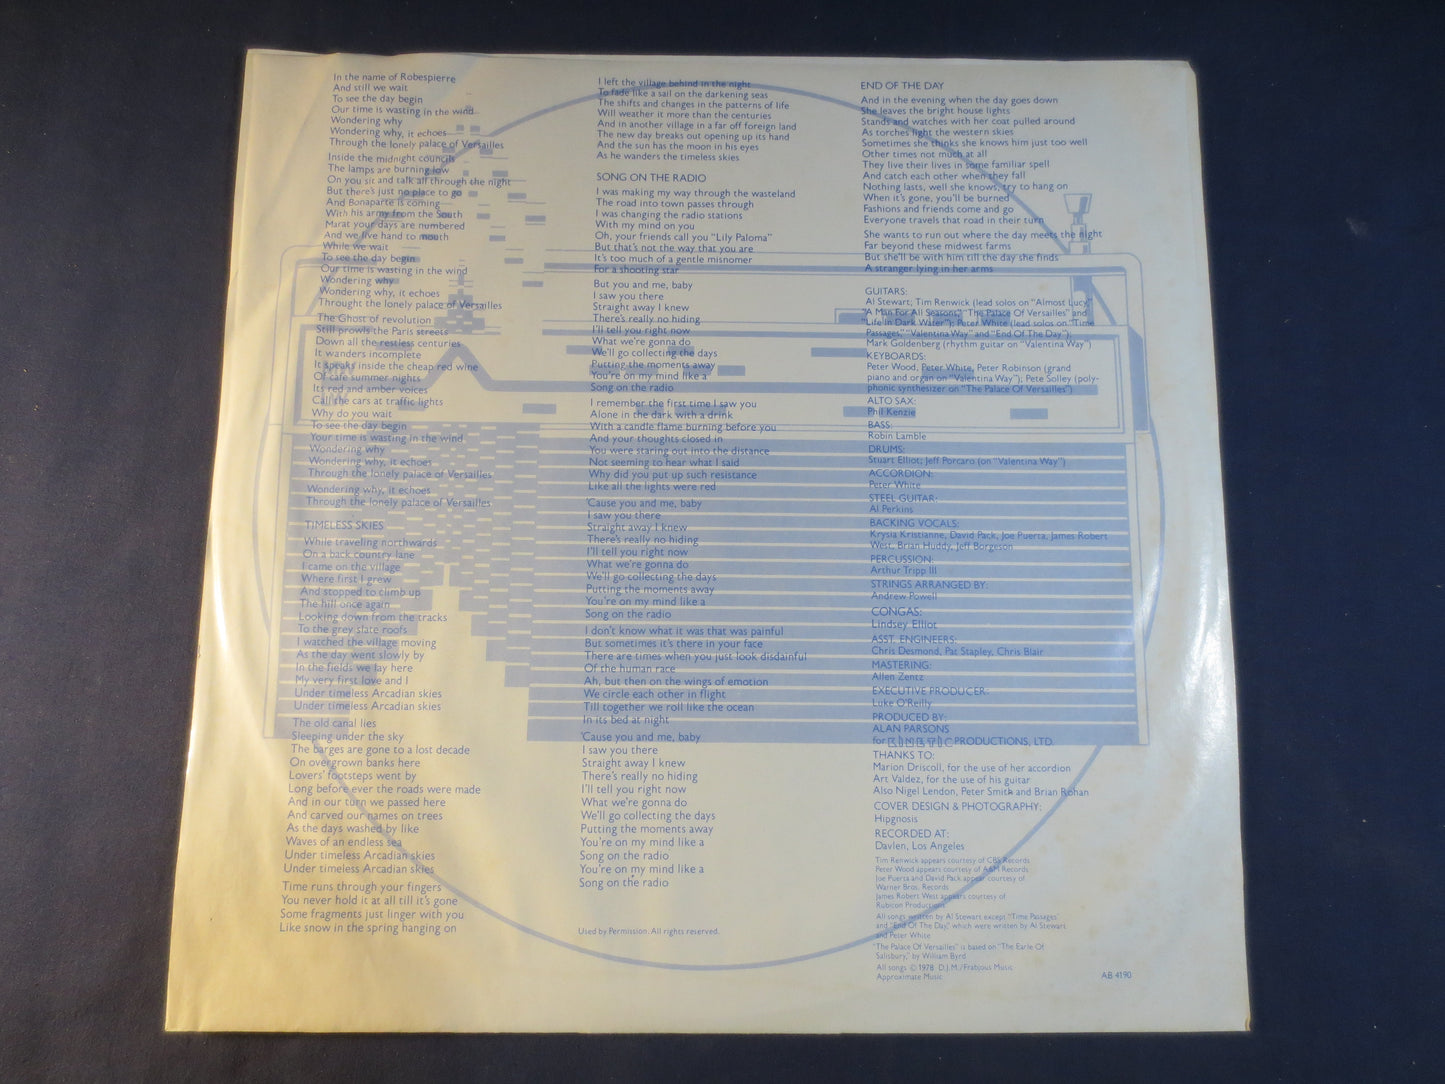 AL STEWART, Time PASSAGES, Rock Records, Al Stewart Record Vinyl, Al Stewart Lp, Vinyl Records, Vinyl Albums, 1978 Records